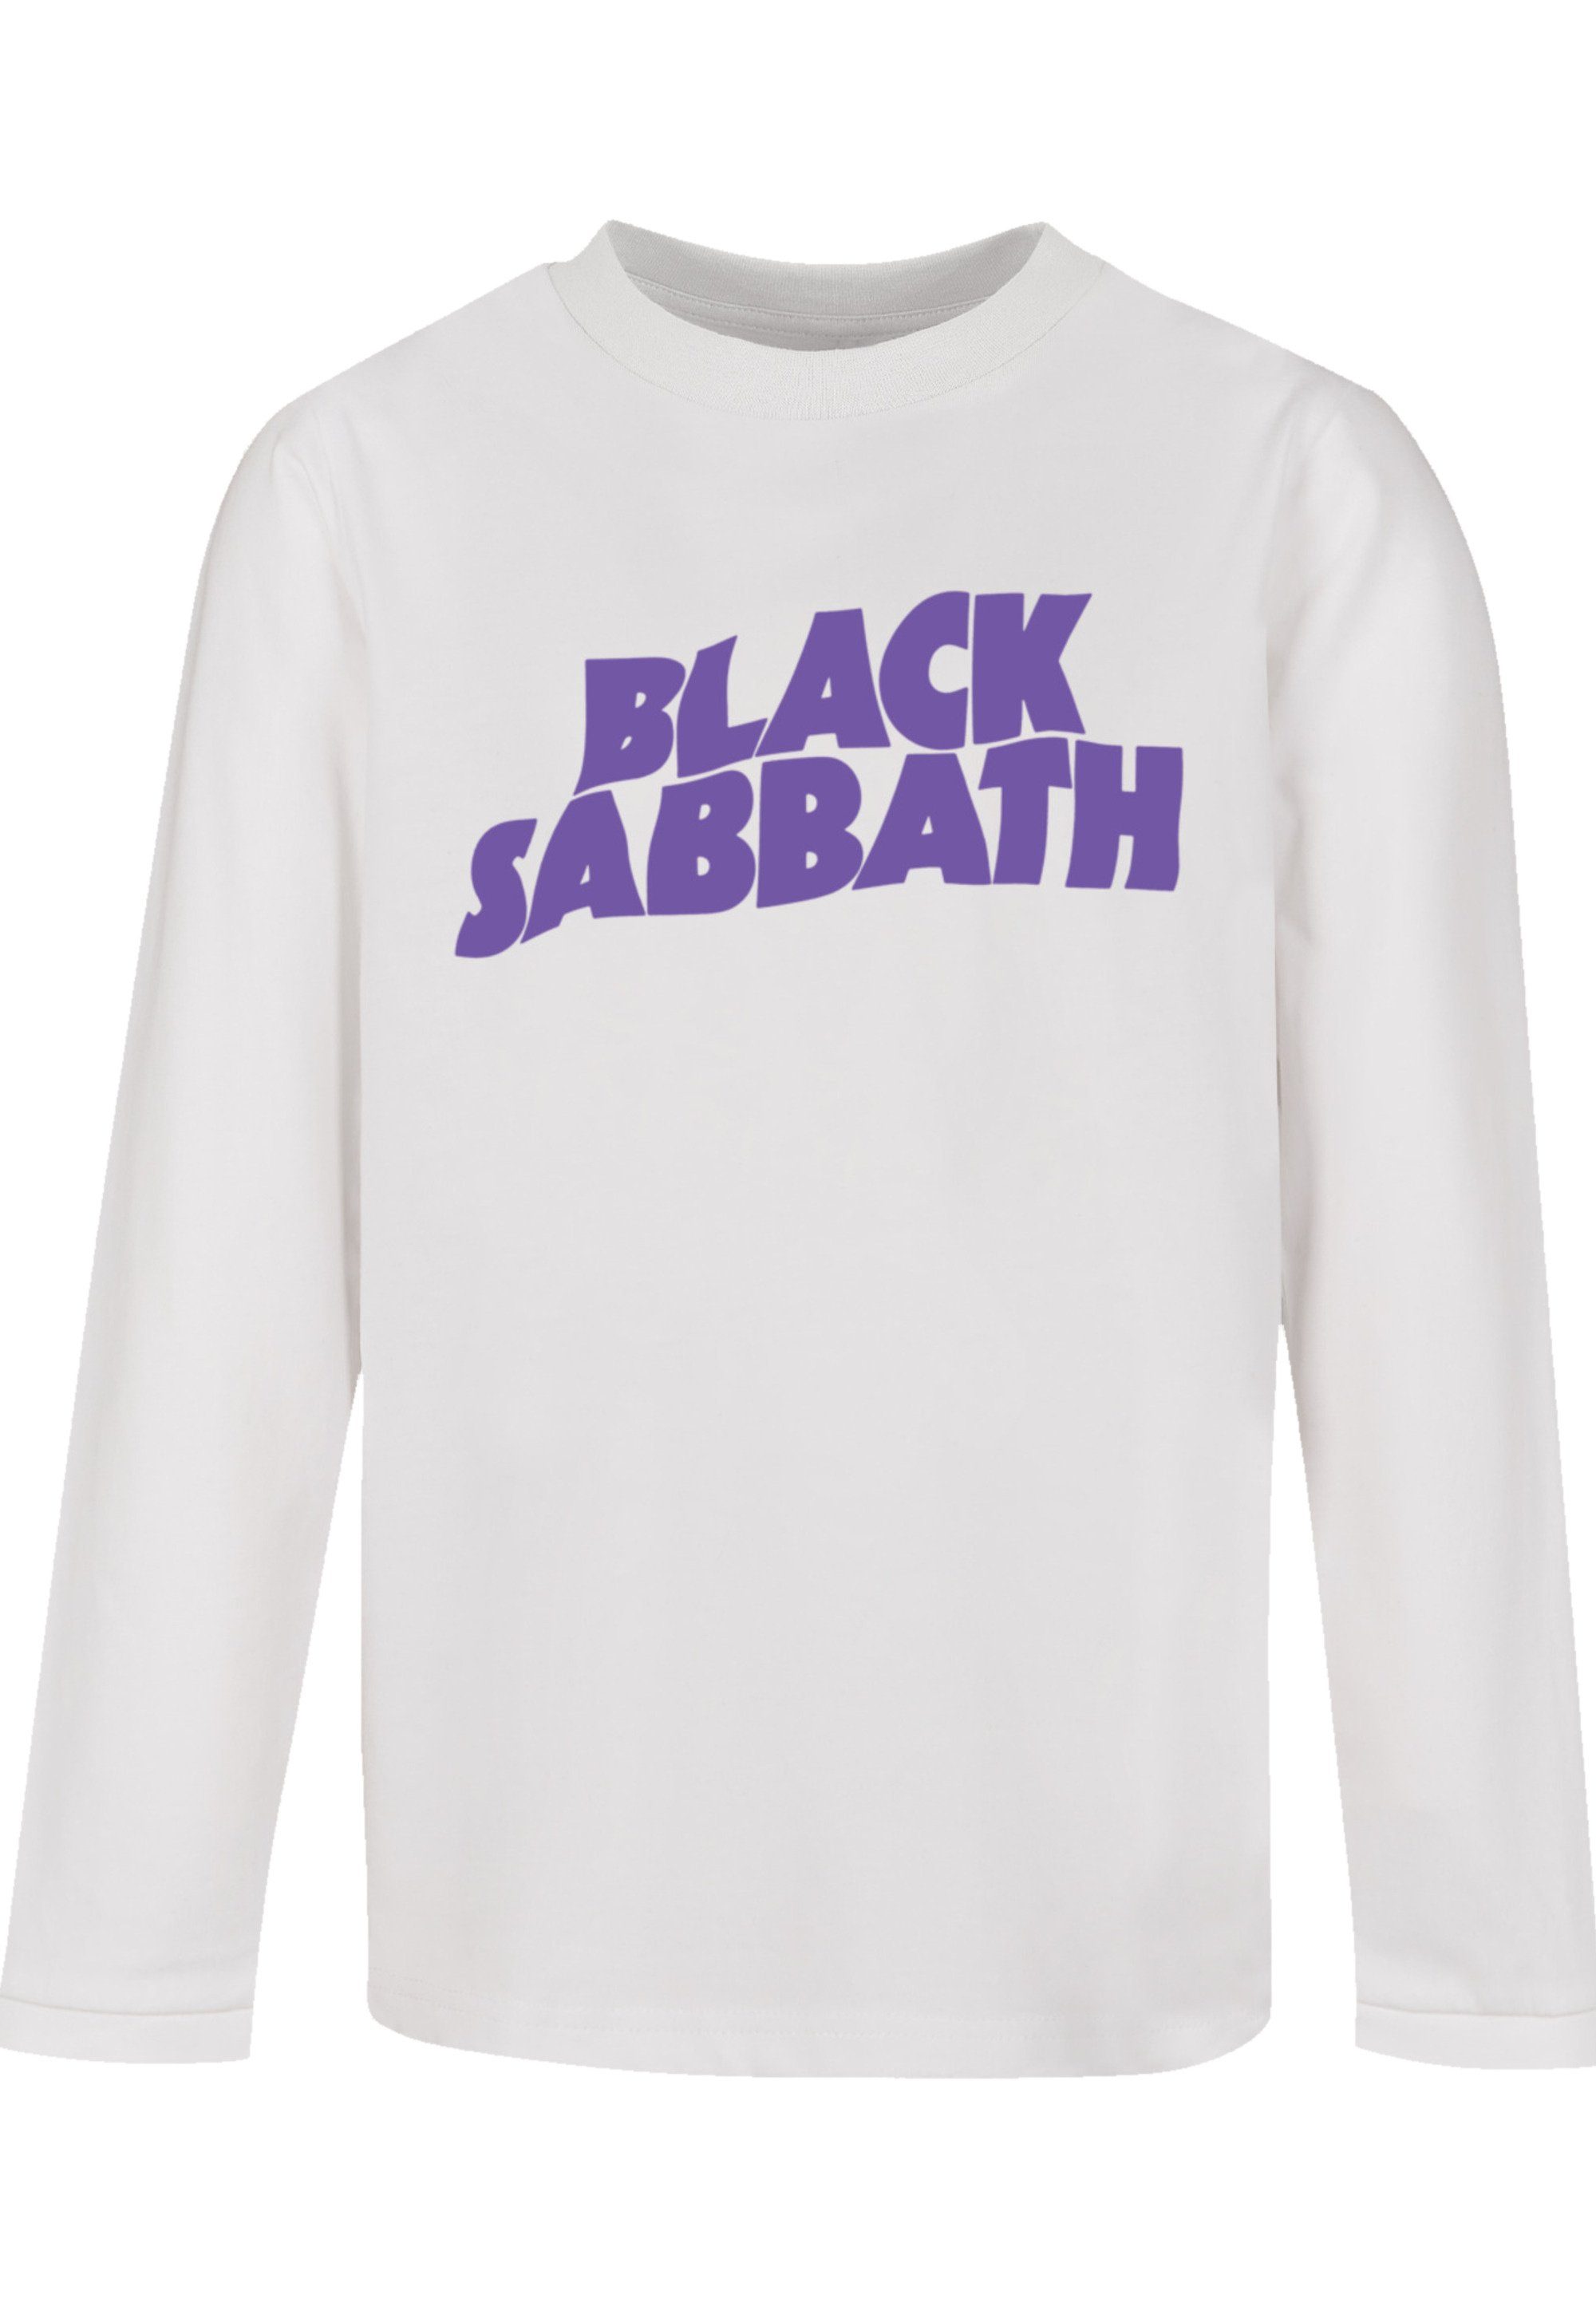 Logo Tragekomfort Black Print, Sabbath weicher Sehr Black hohem T-Shirt F4NT4STIC mit Baumwollstoff Wavy